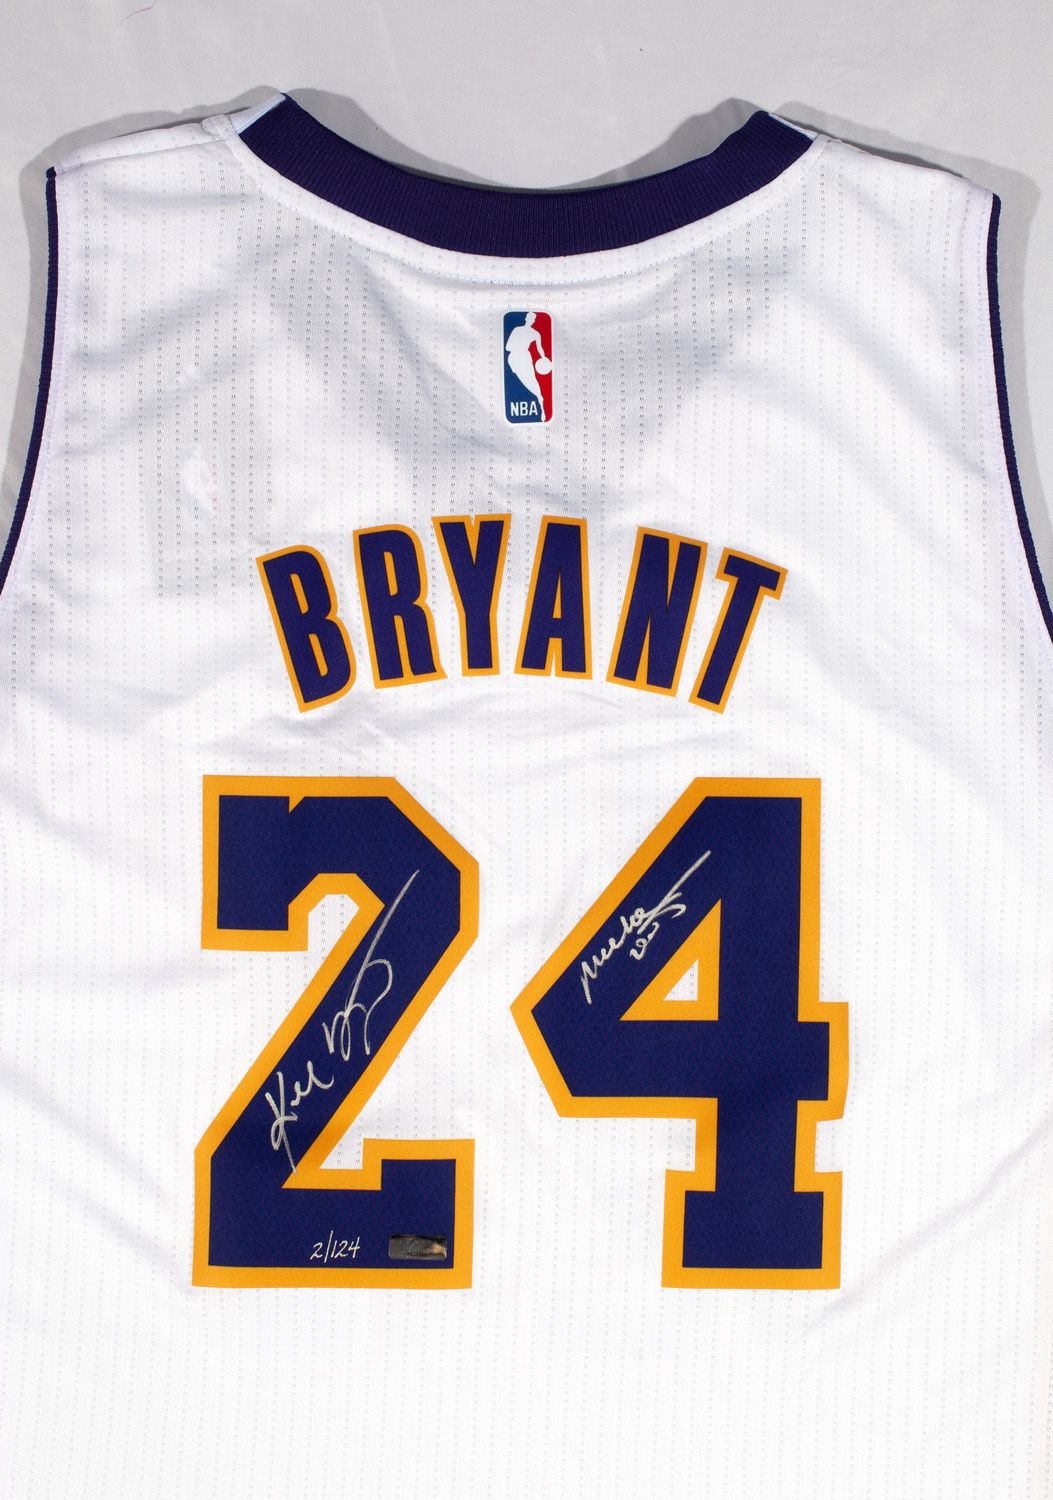 Kobe Bryant Autographed Jerseys, Signed Kobe Bryant Inscripted Jerseys